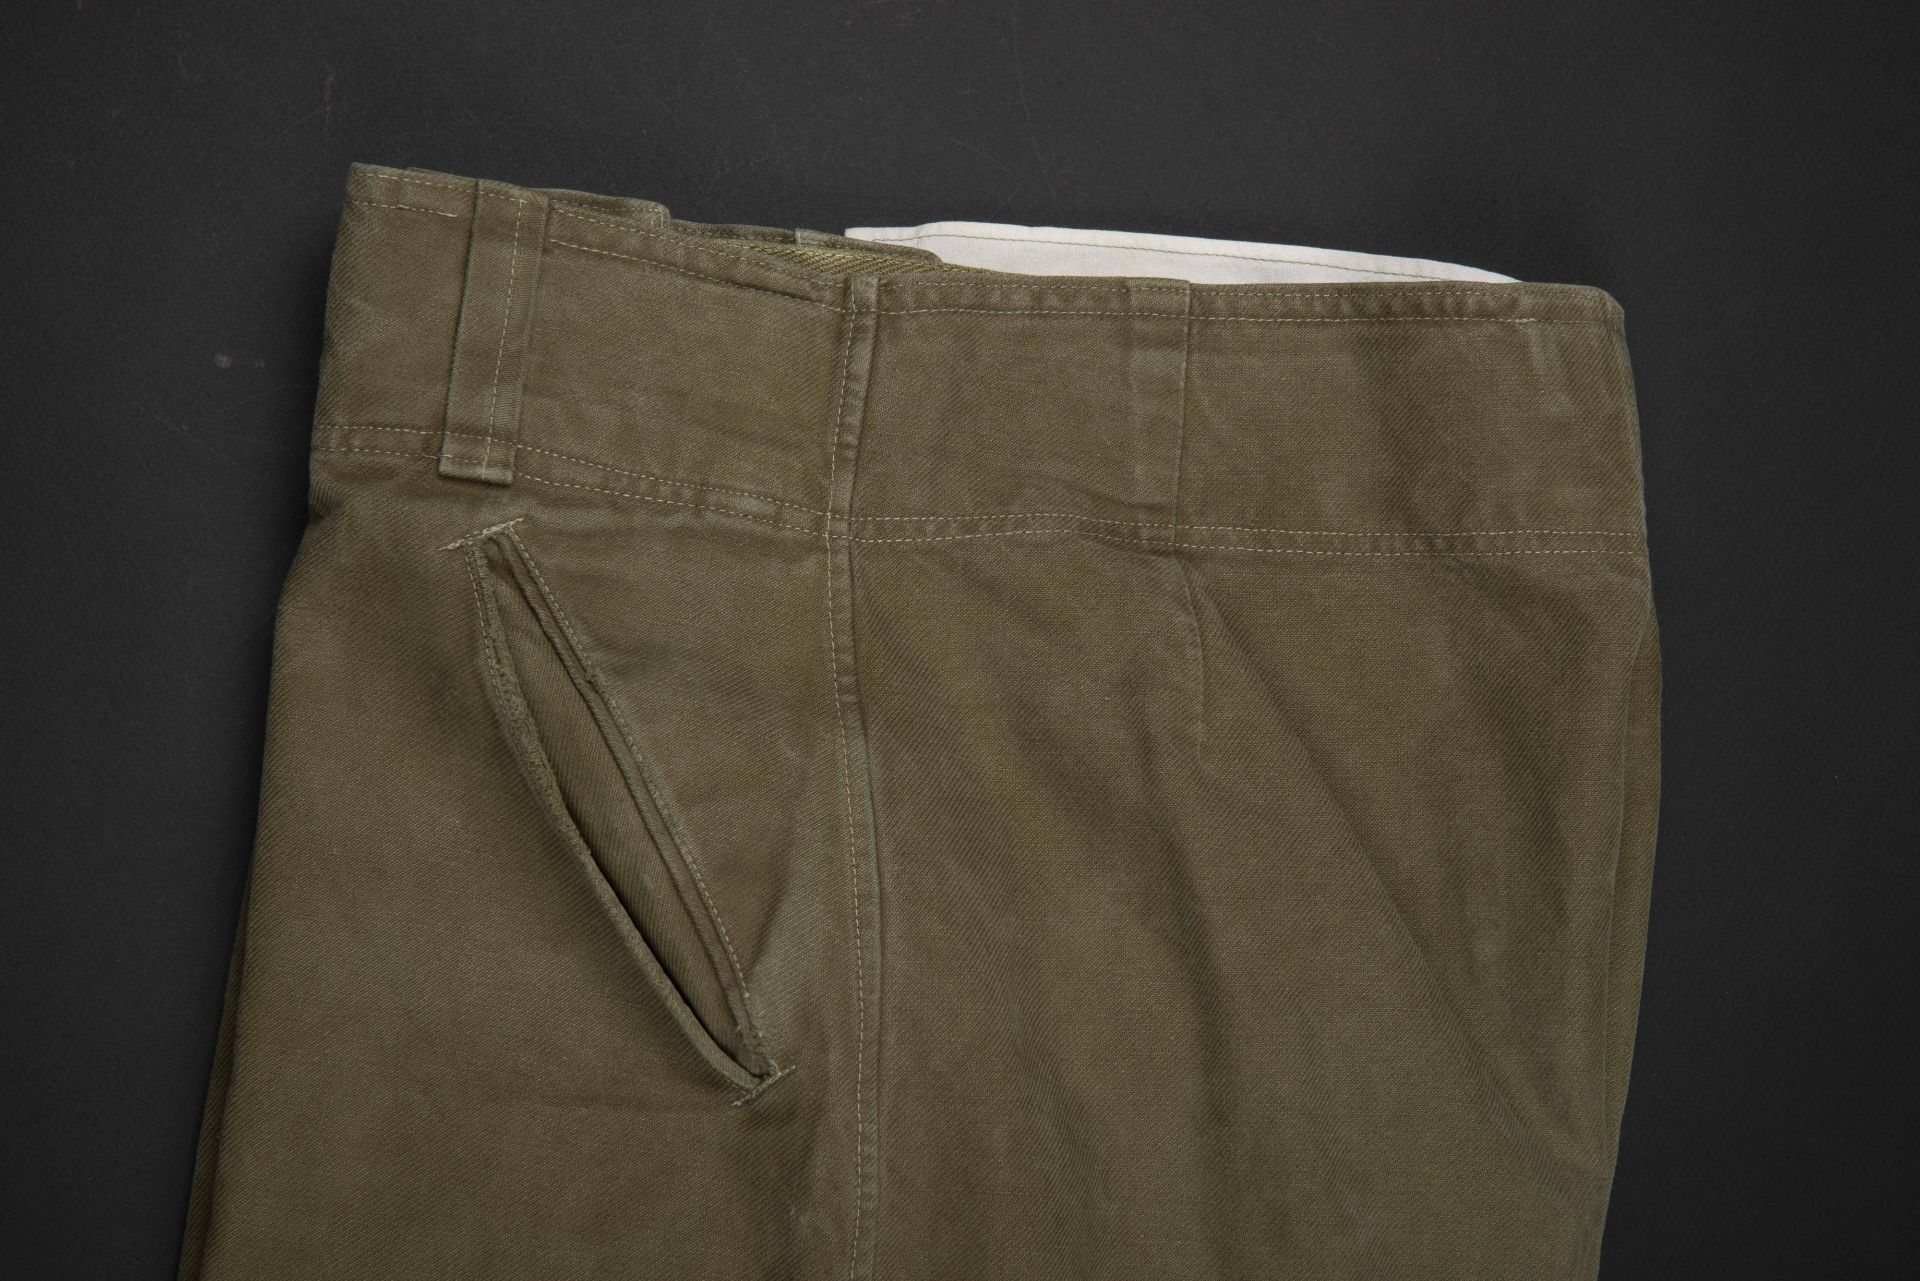 Pantalon tropical. AK tropical trousers. - Image 4 of 4